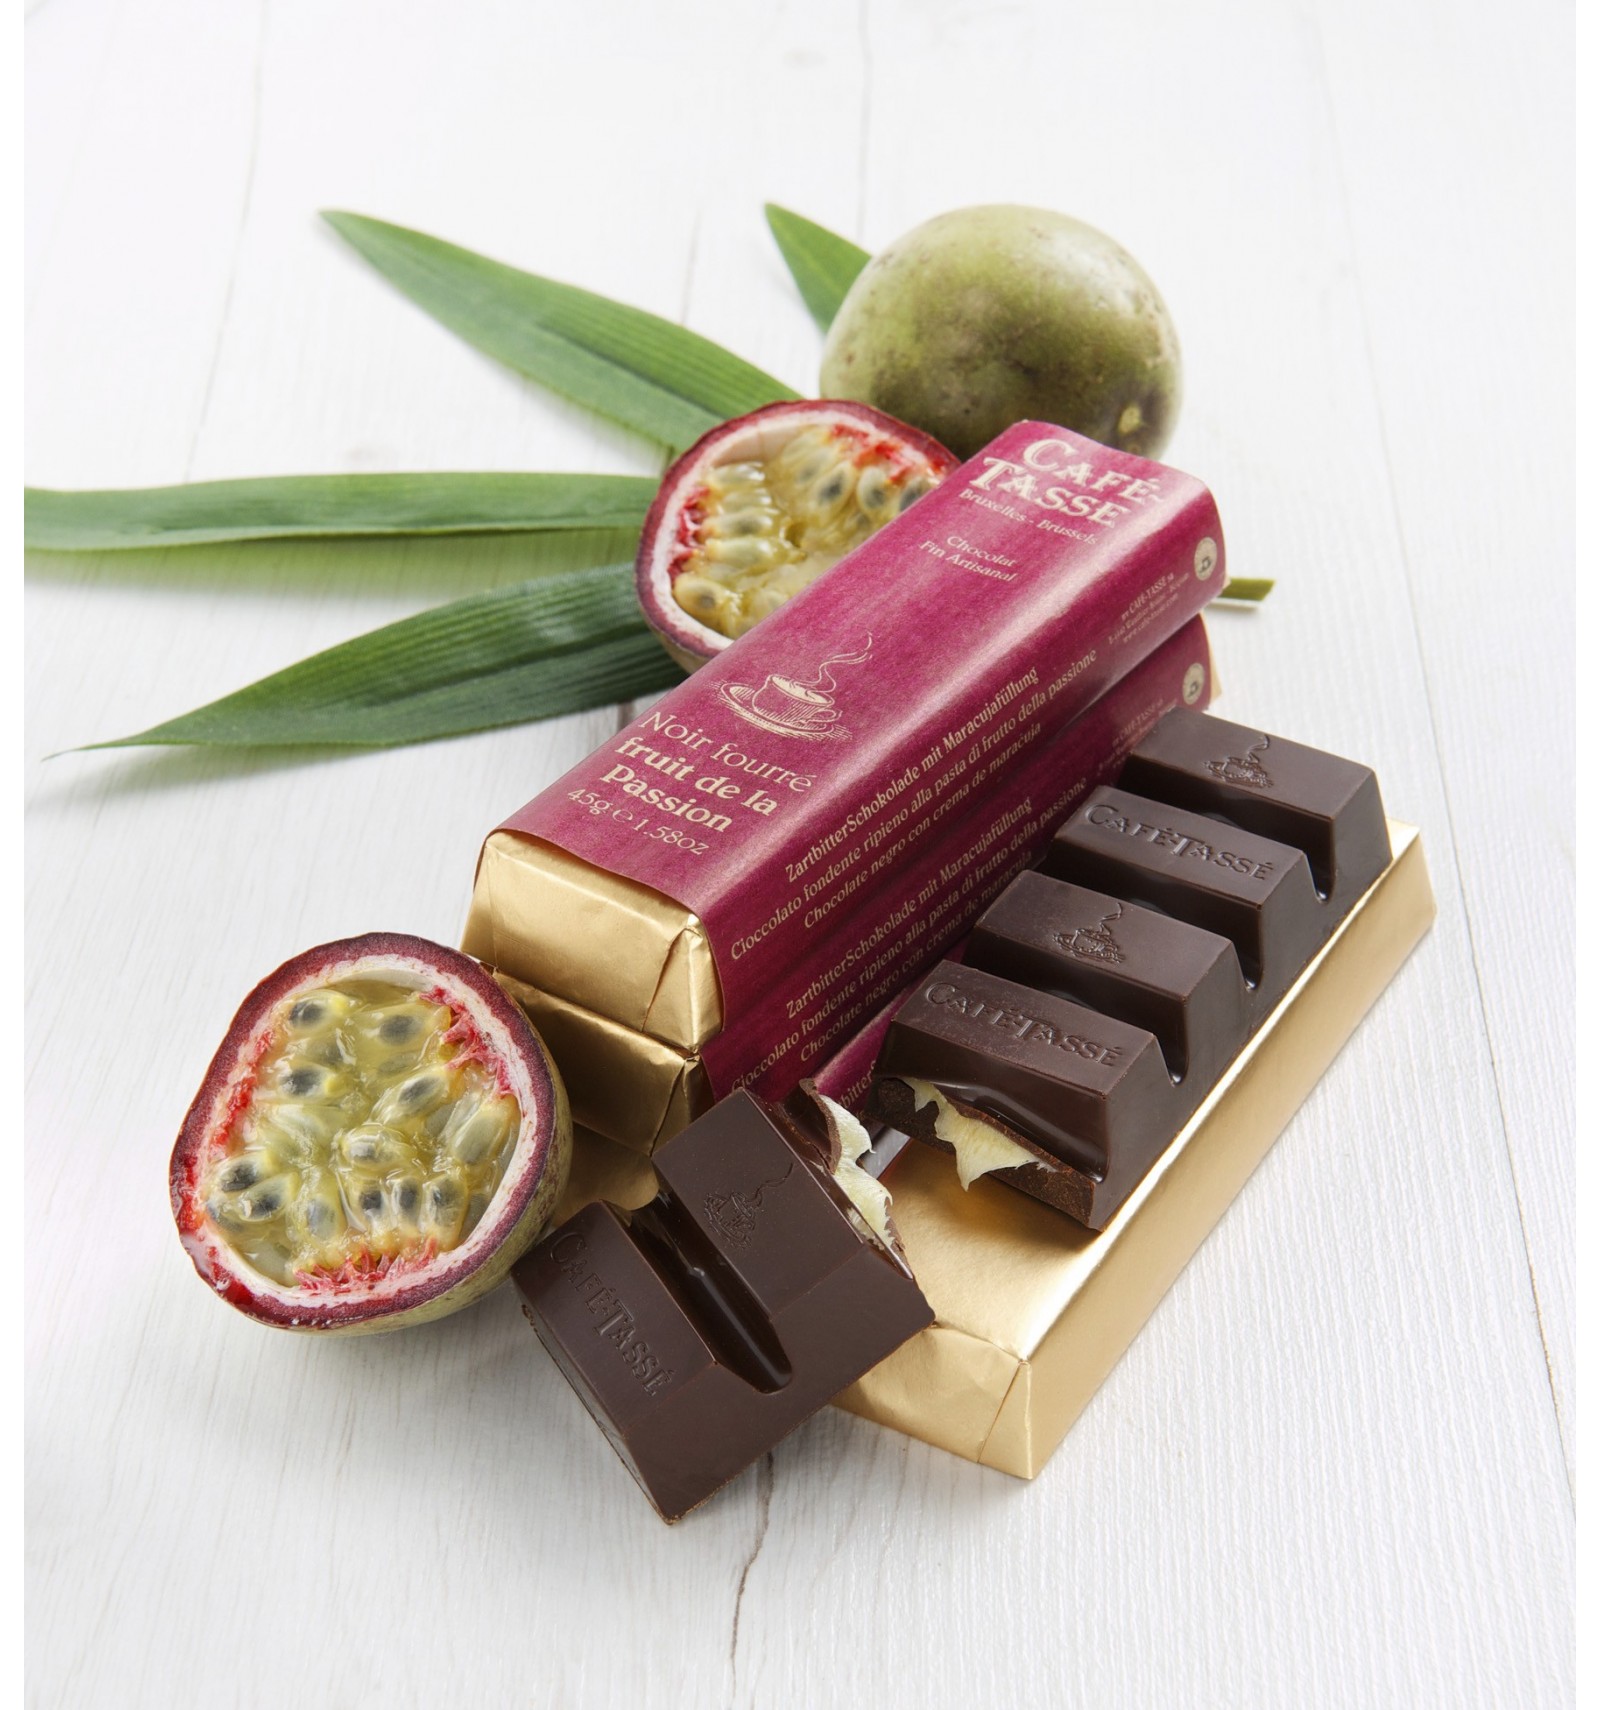 Barre de chocolat noir fruits passion – Le Panier de Lili